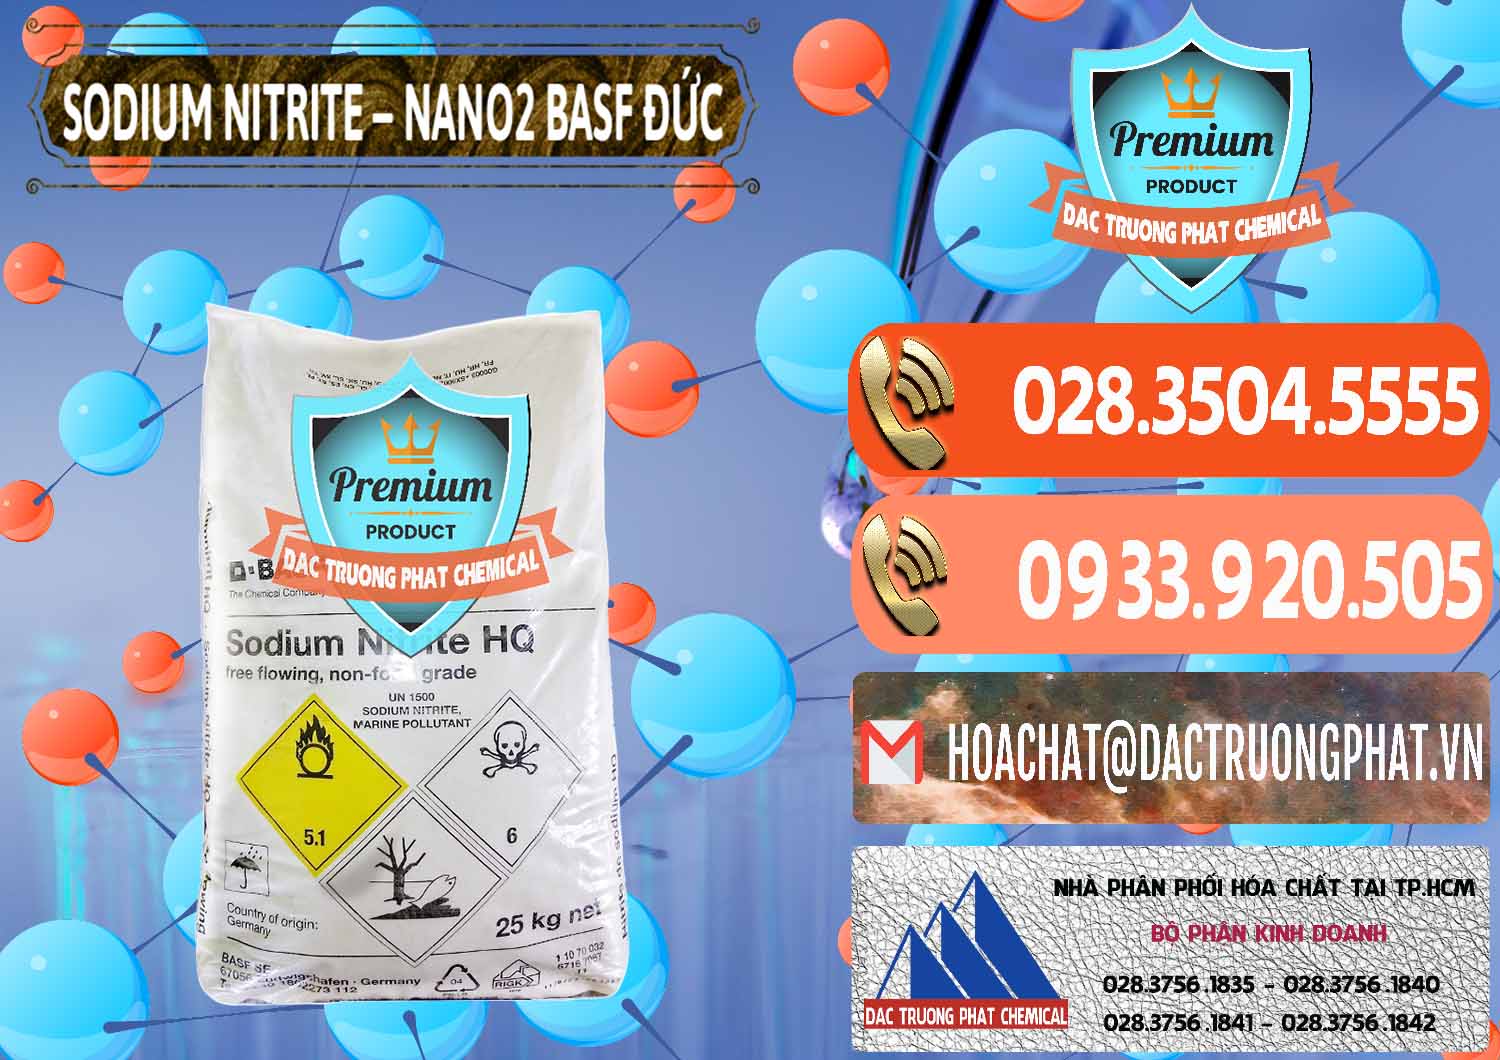 Cty chuyên phân phối _ bán Sodium Nitrite - NANO2 Đức BASF Germany - 0148 - Công ty nhập khẩu và phân phối hóa chất tại TP.HCM - hoachatmientay.com